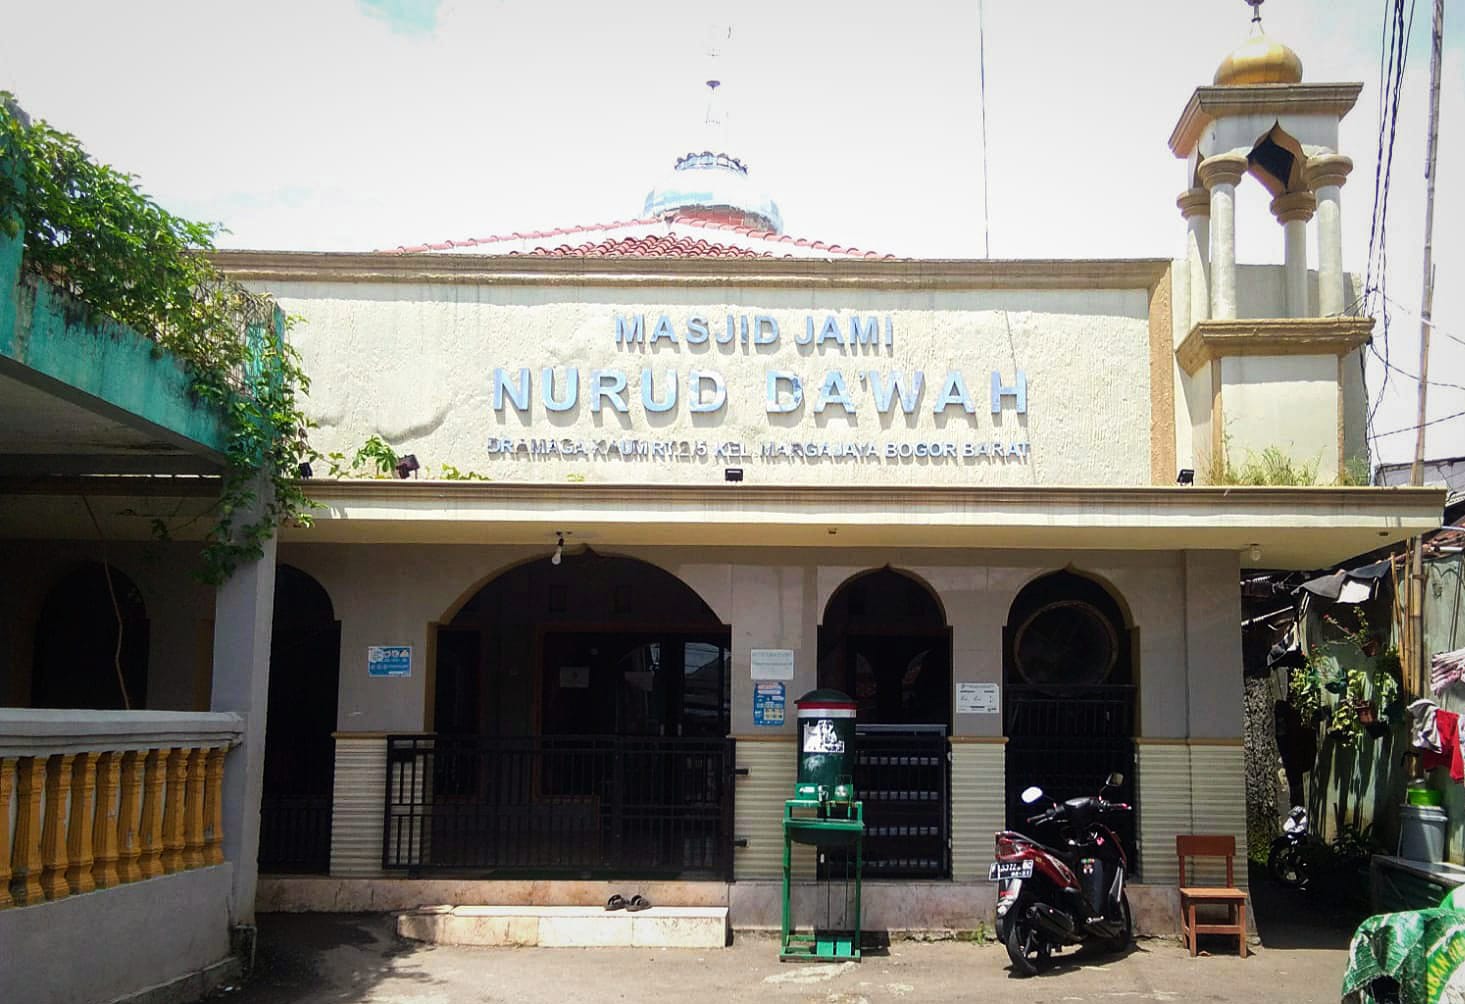 Salah satu masjid tertua di Kelurahan Margajaya, Kecamatan Bogor Barat, Kota Bogor peninggalan zaman Belanda. (Yudha Prananda / Jabar Ekspres)